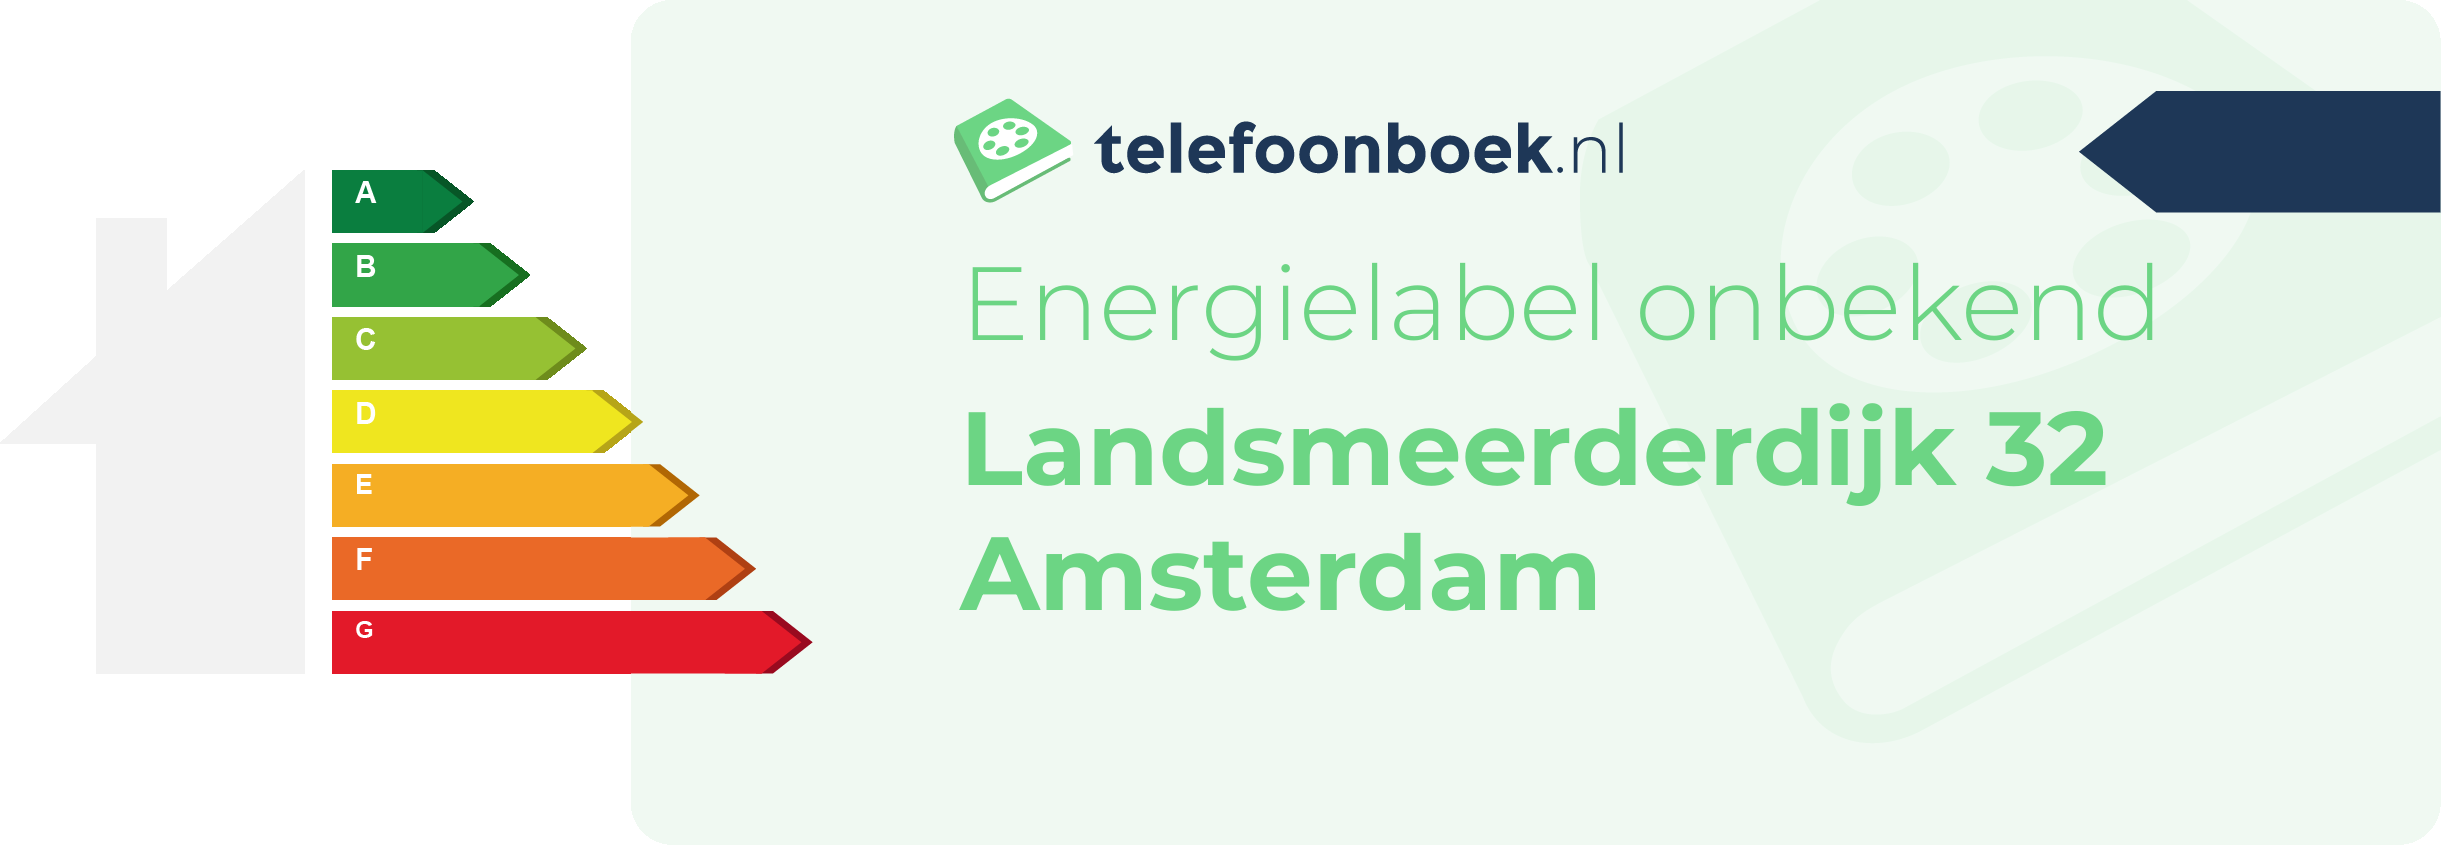 Energielabel Landsmeerderdijk 32 Amsterdam